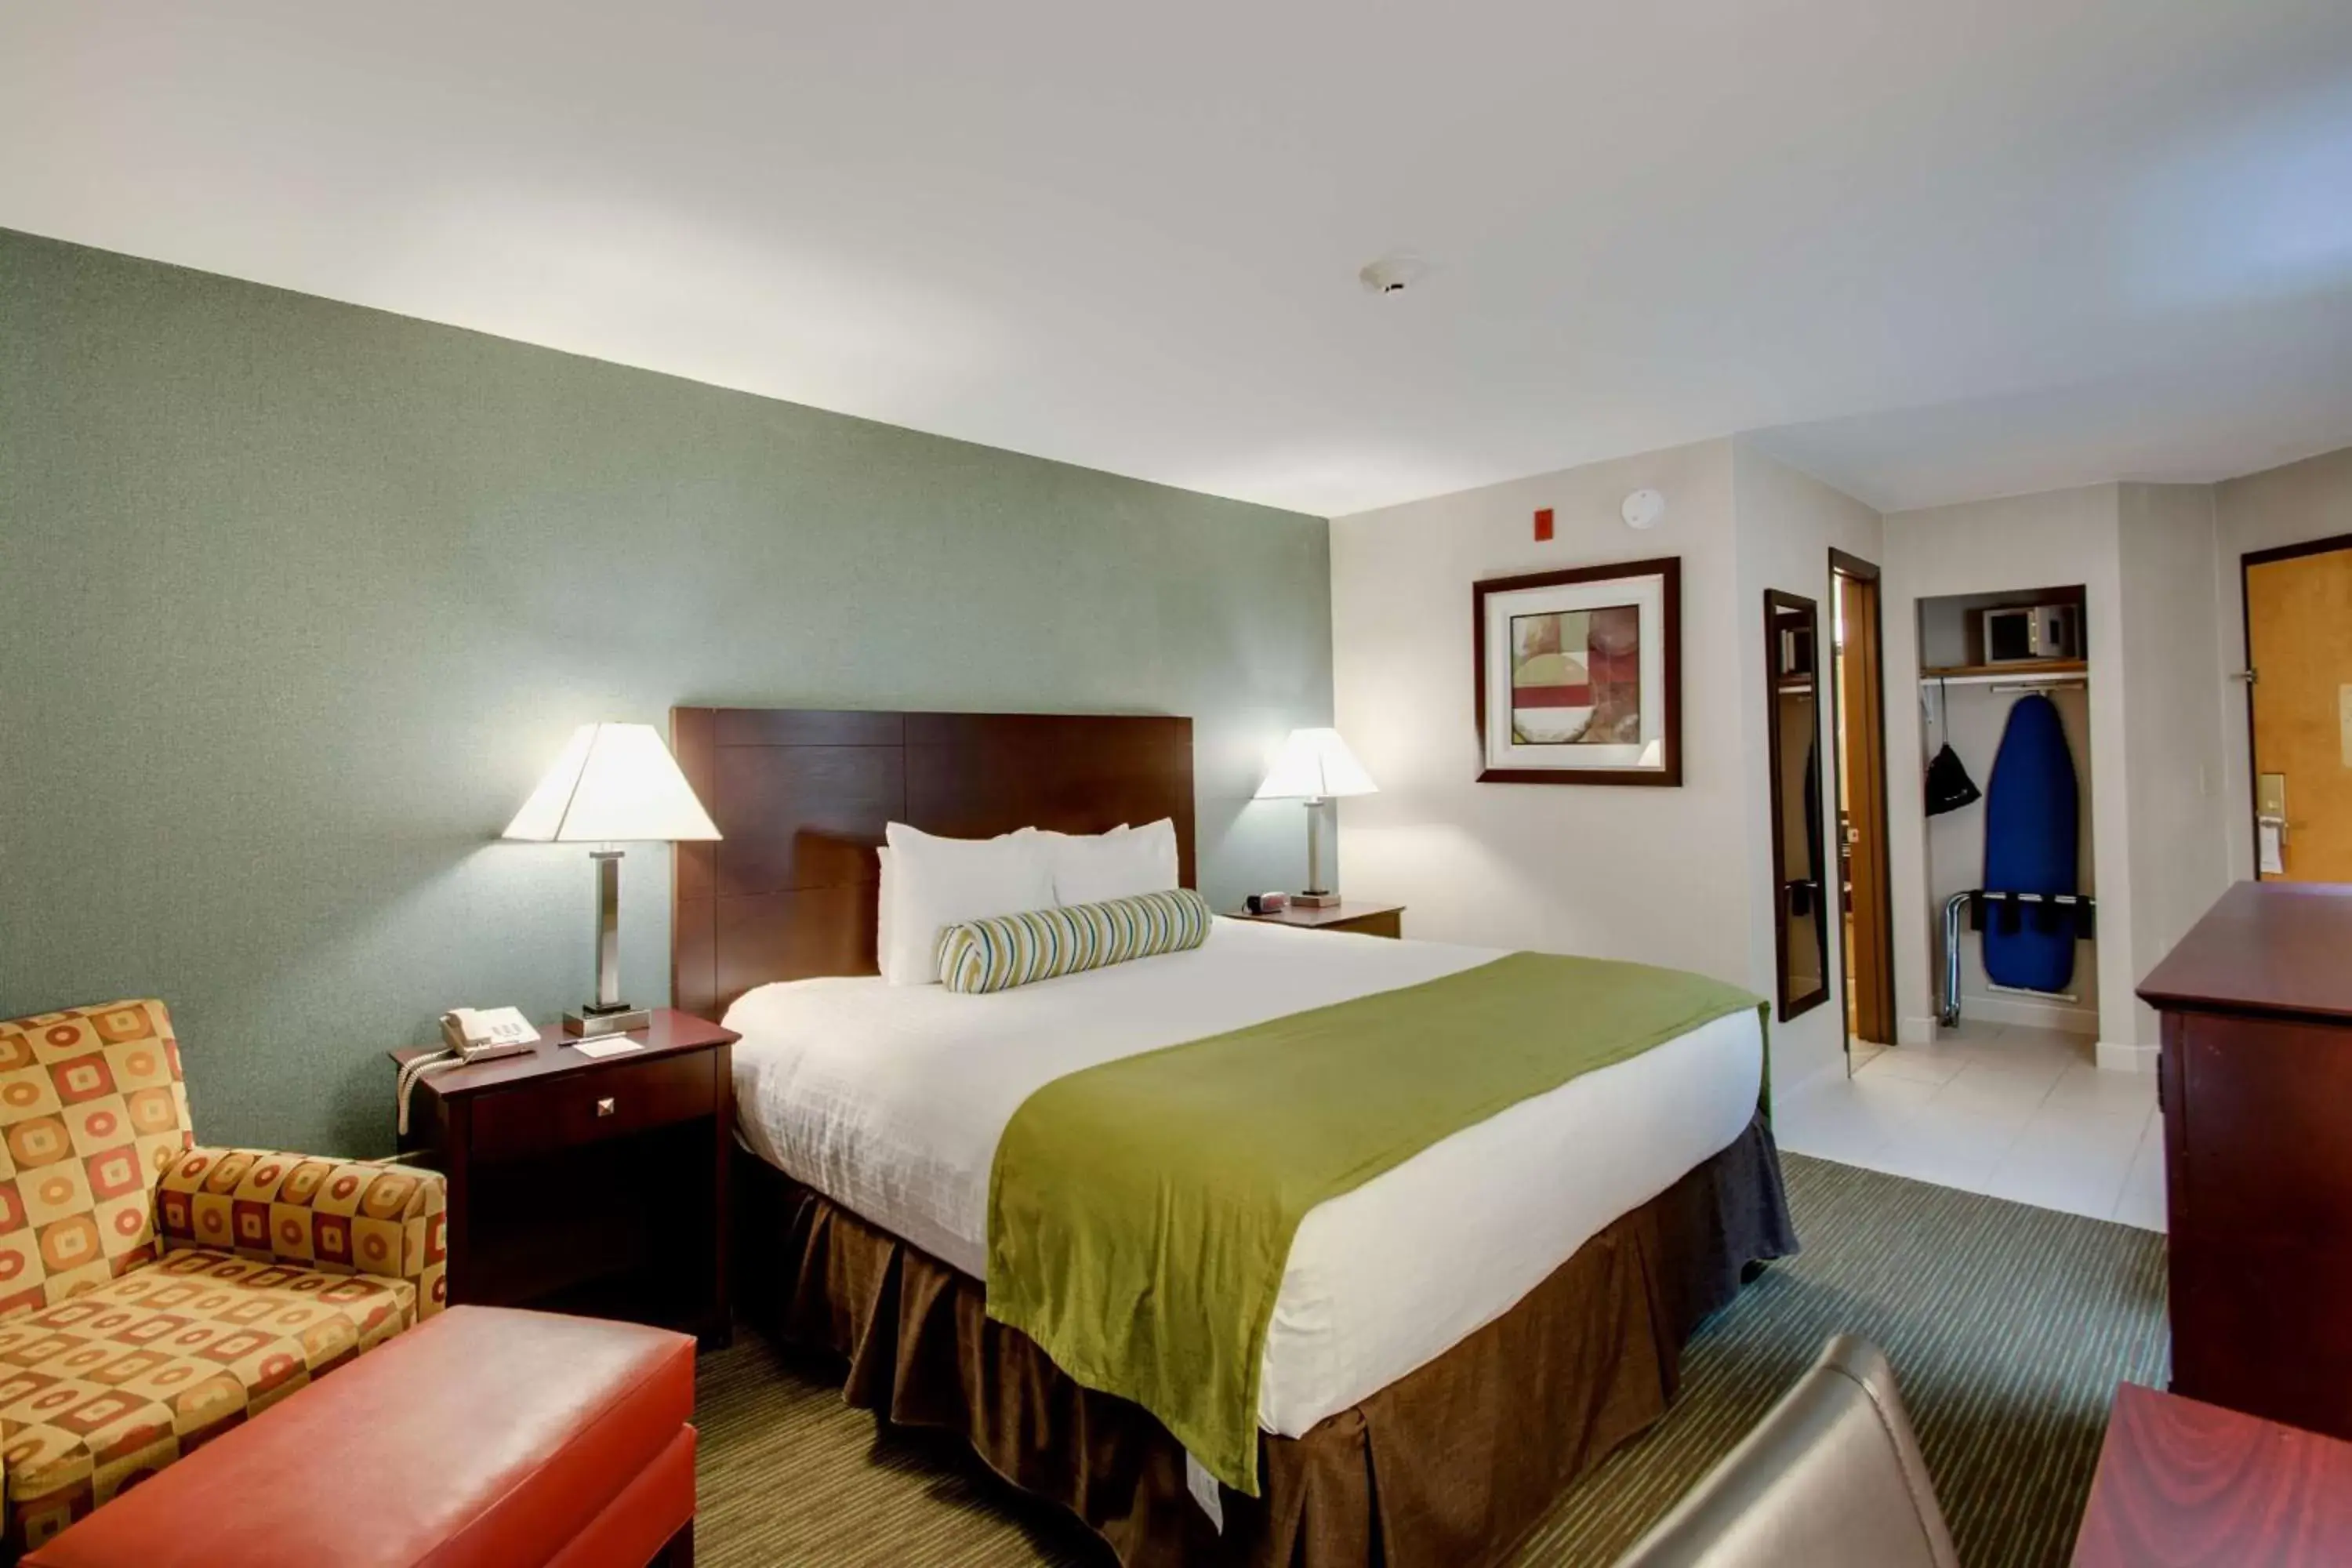 Bedroom, Bed in Best Western Plus, The Inn at Hampton